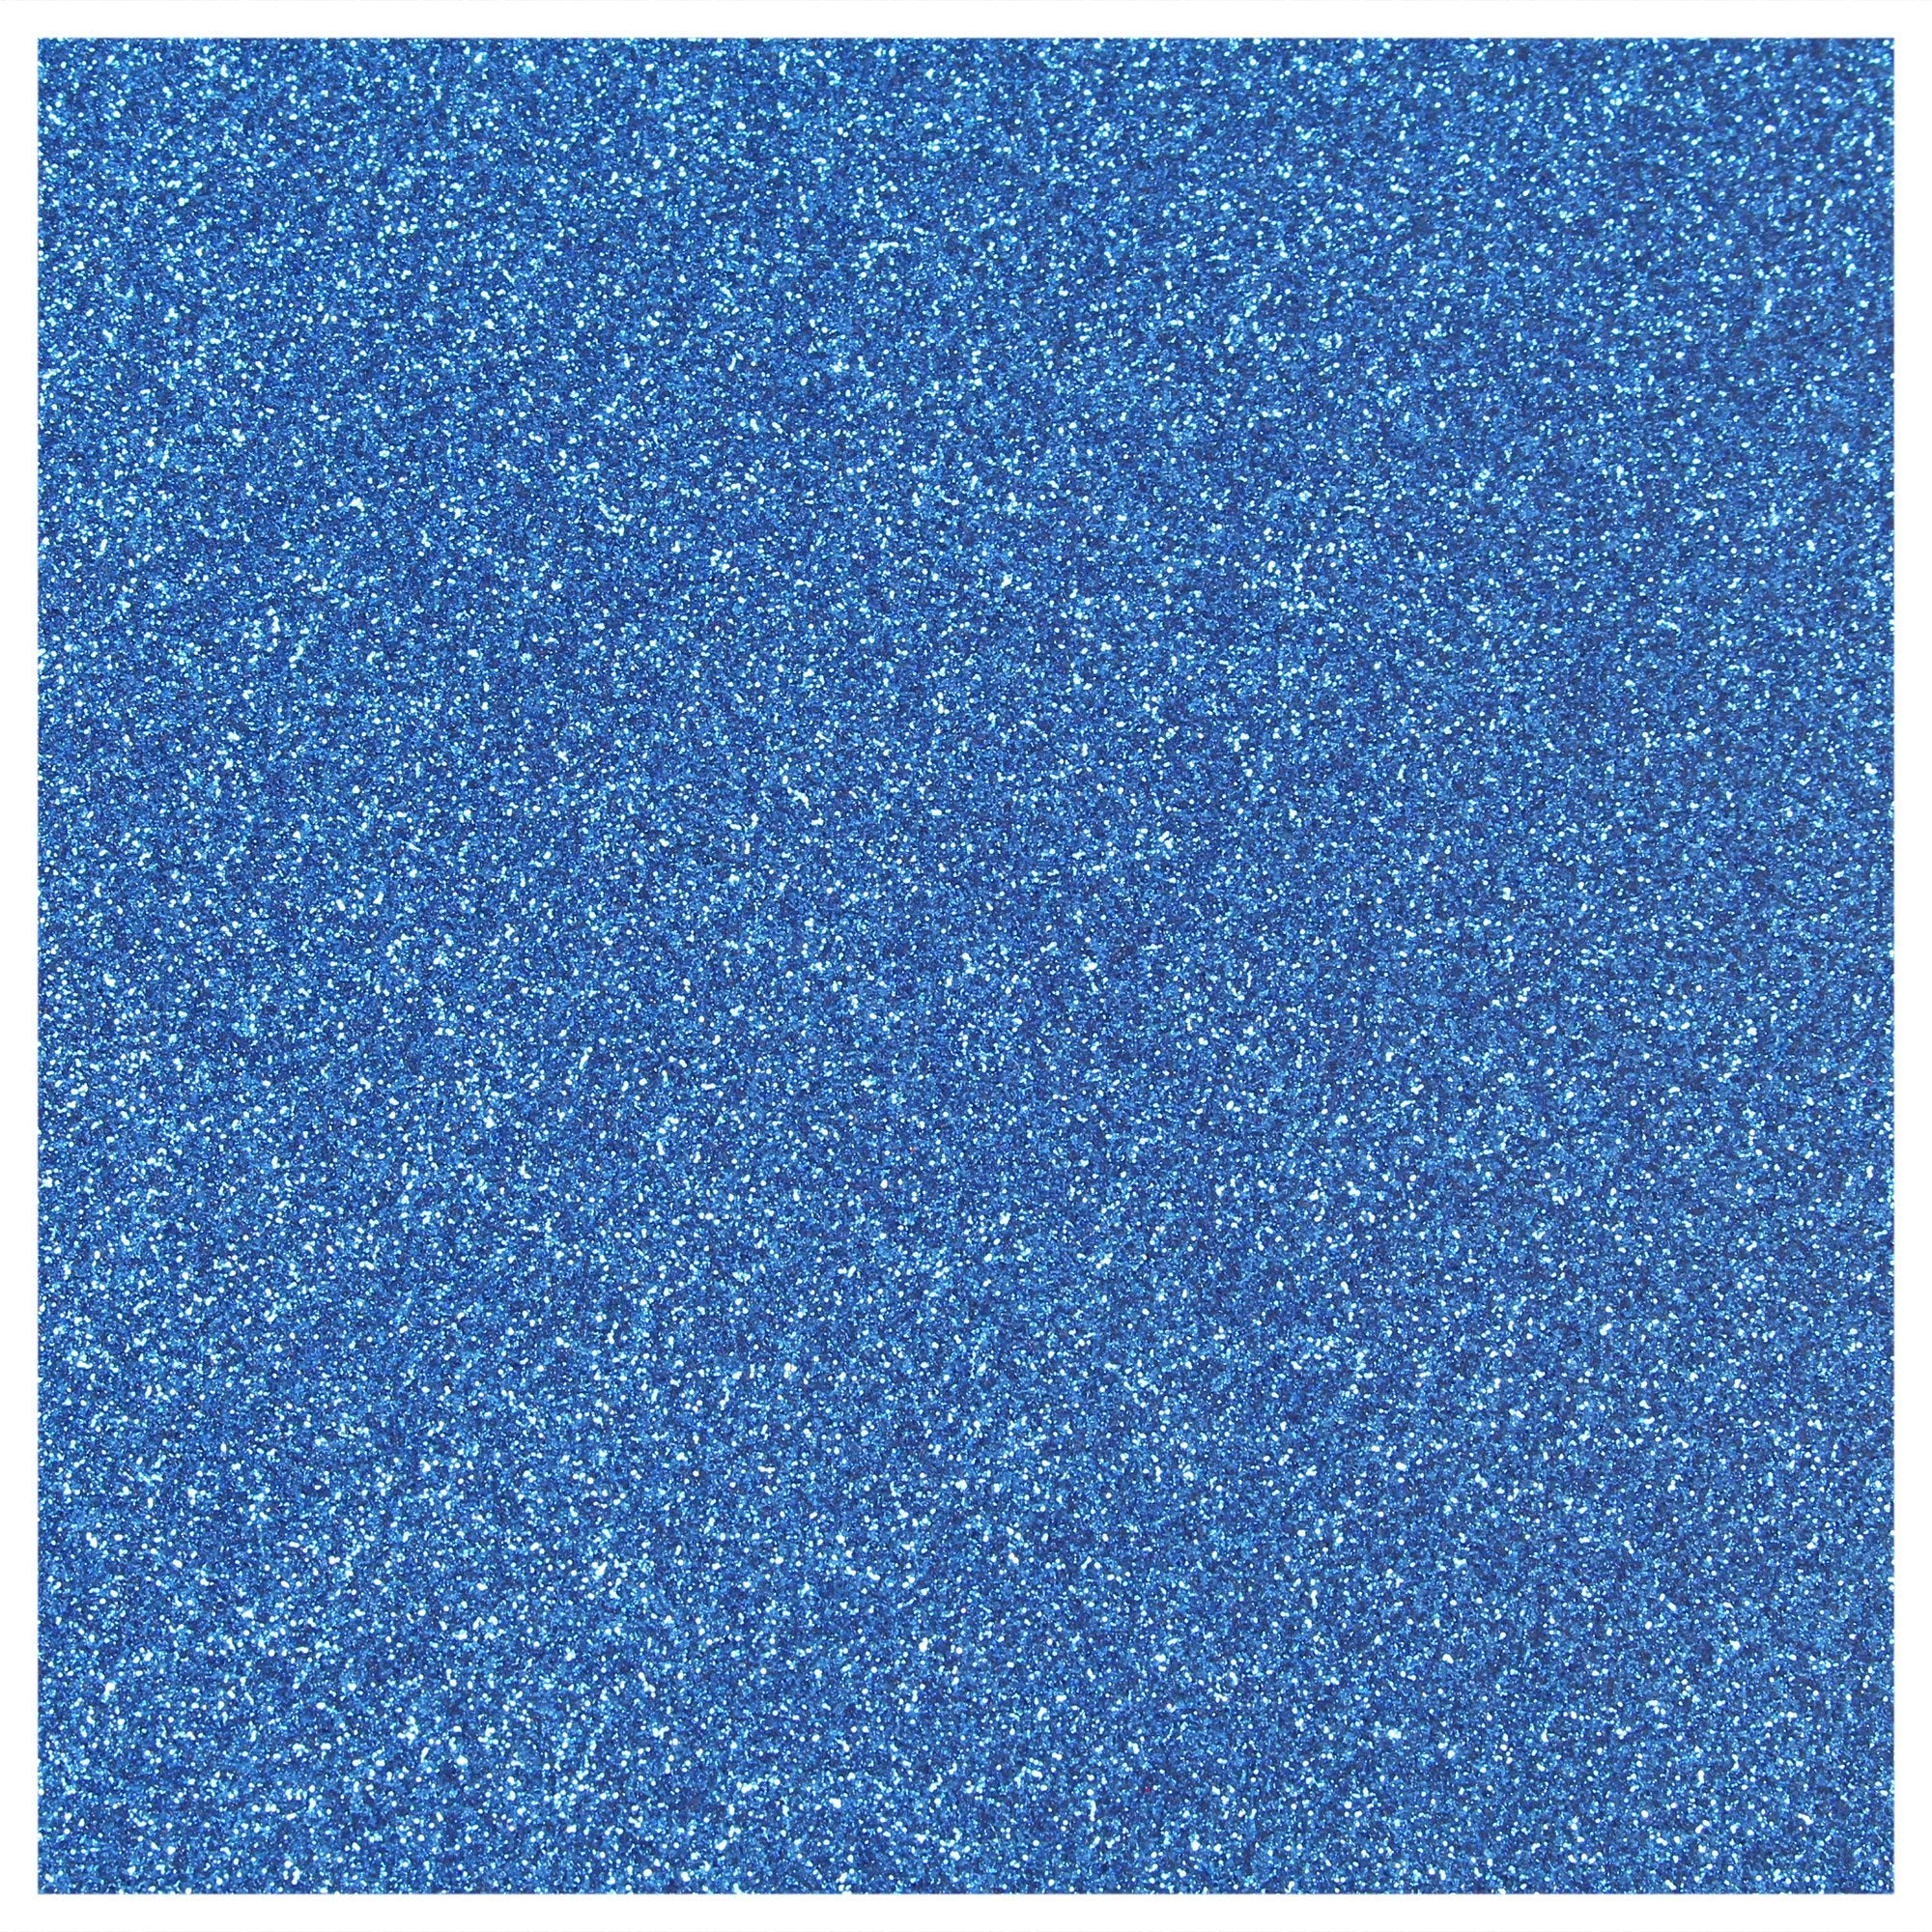 Siser Glitter Heat Transfer Vinyl (HTV) - Blue